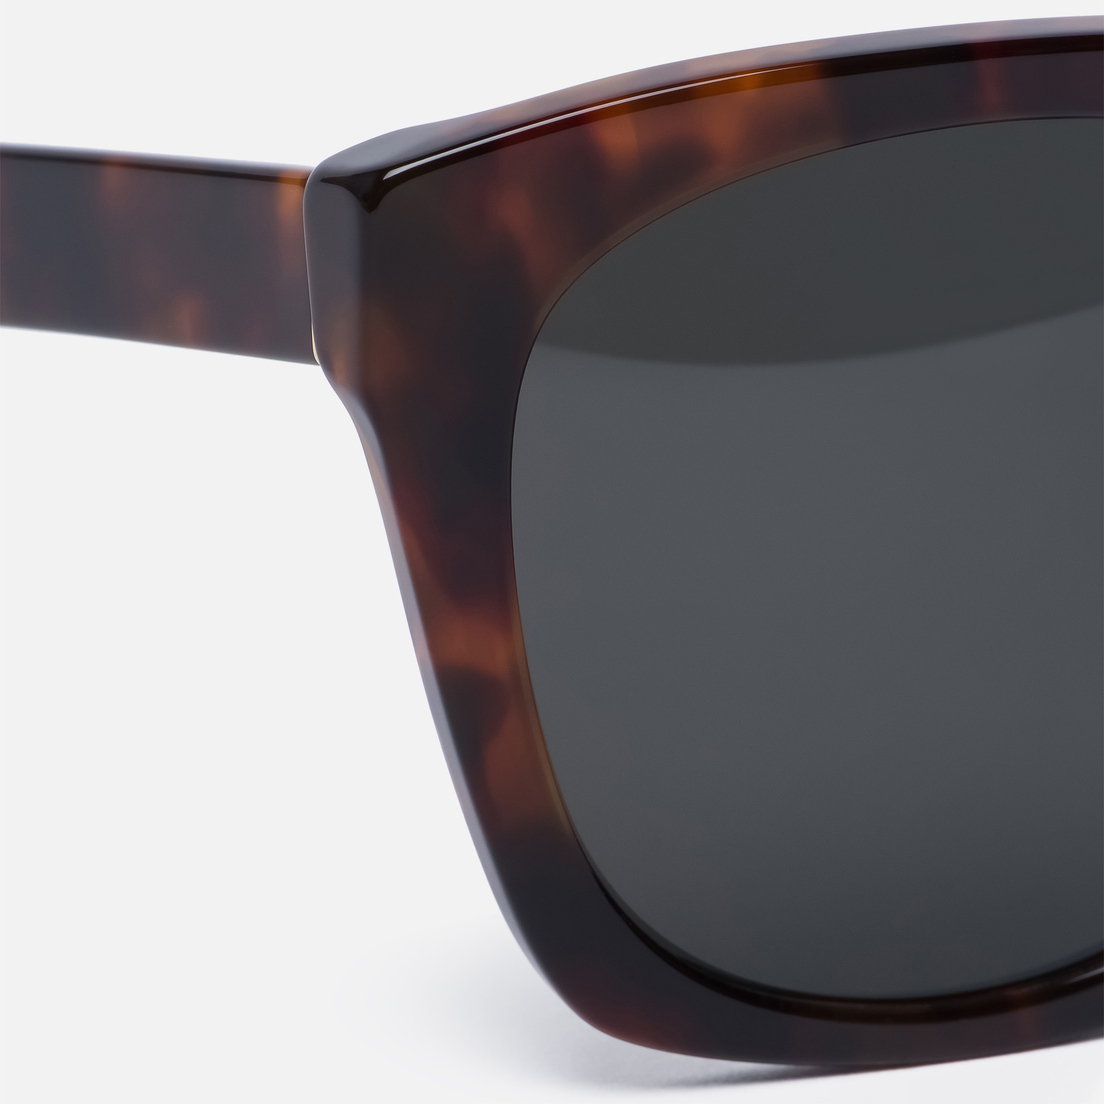 RETROSUPERFUTURE Солнцезащитные очки Quadra